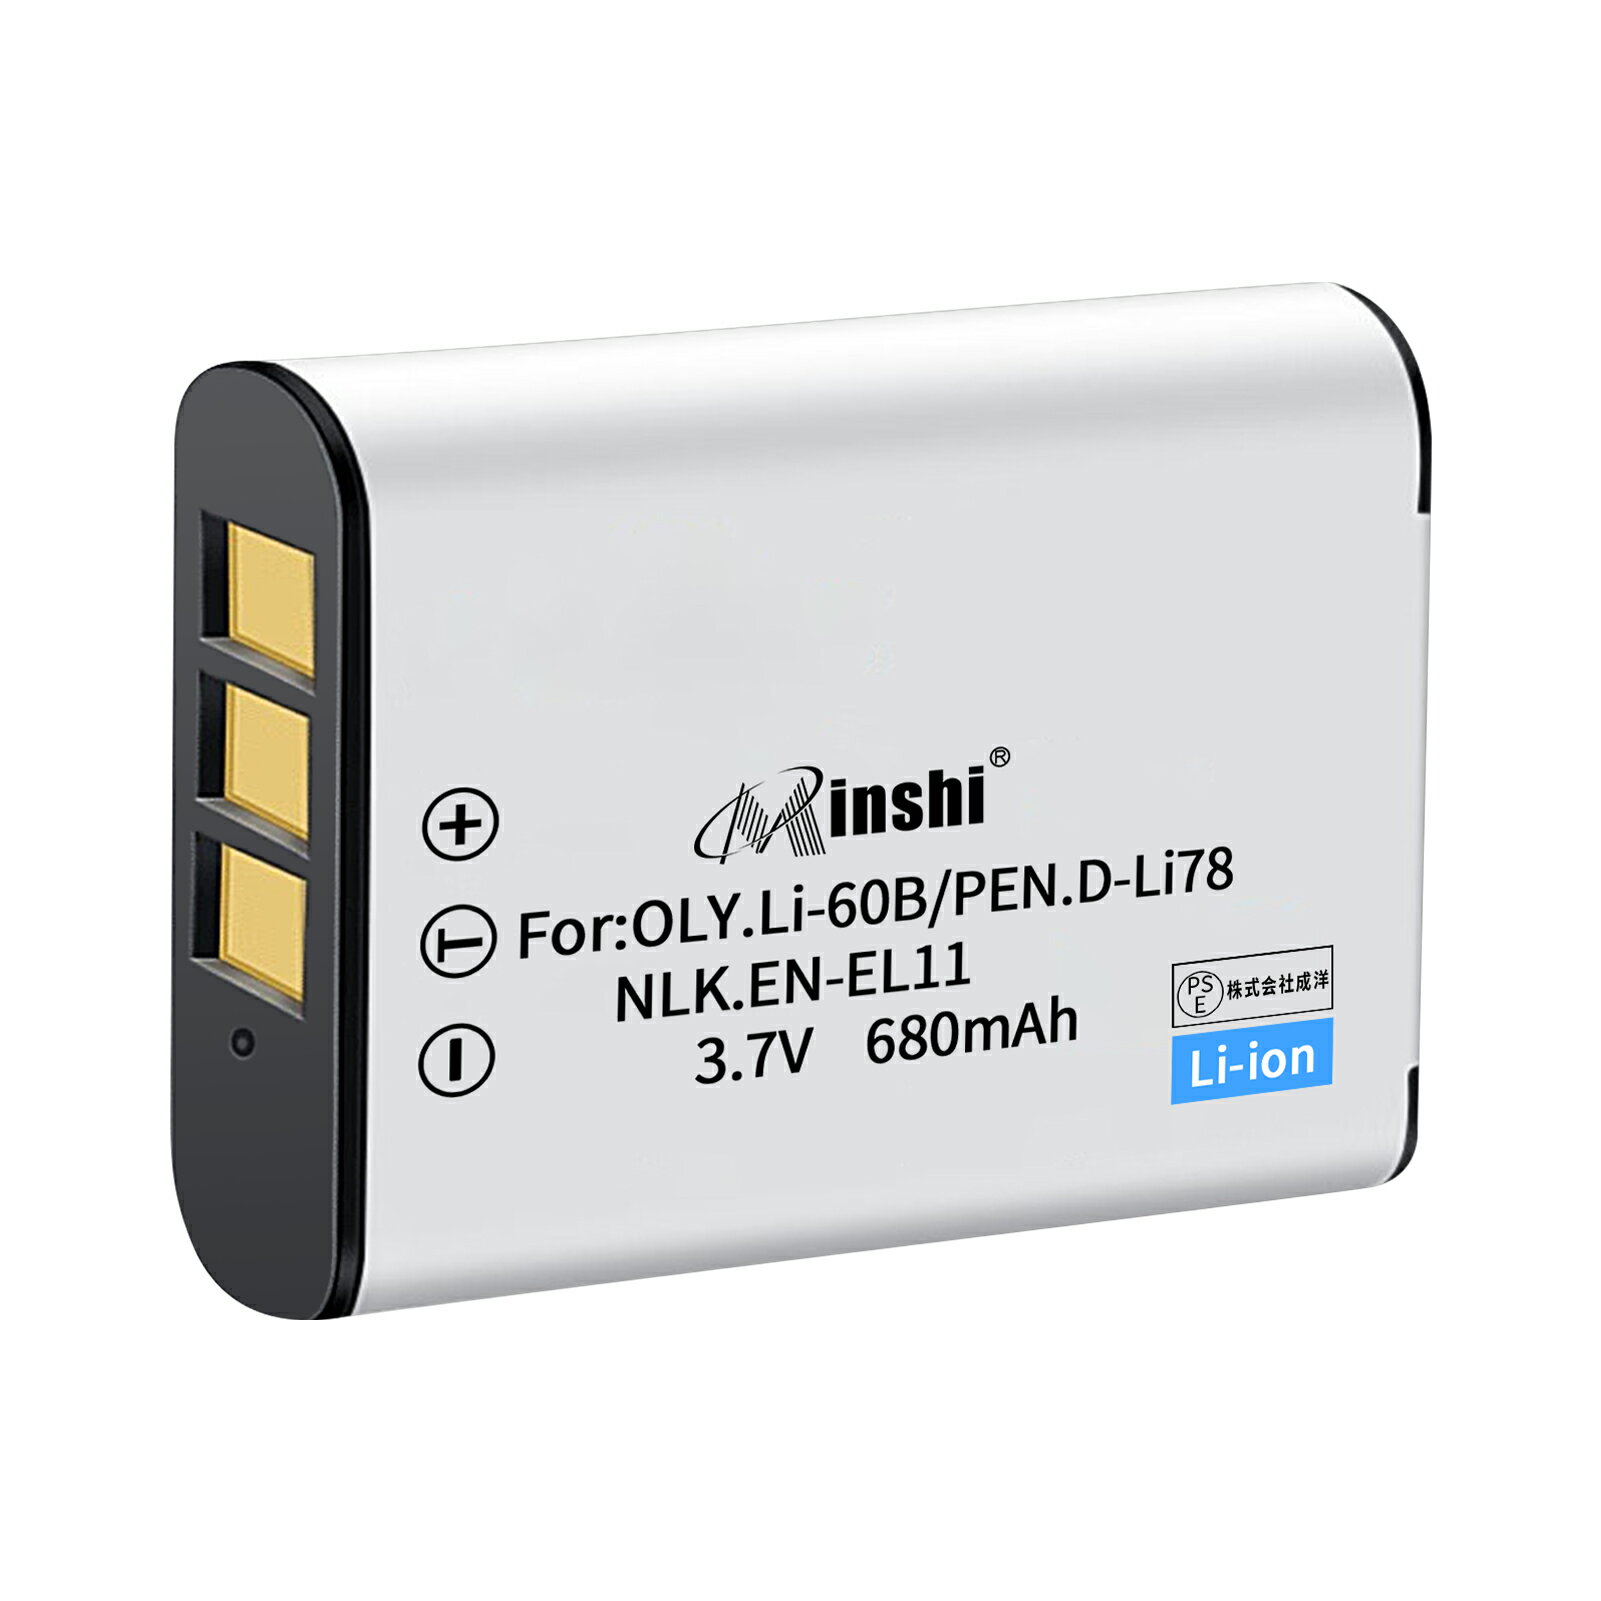 minshi 新品 NIKON Optio V20 互換バッテリー 1200mAh XAB 高品質交換用リチャージブル カメラバッテリー リチウムイオンバッテリー 充電池 PSE認証 1年間保証 オリジナル充電器との互換性がない 予備バッテリー